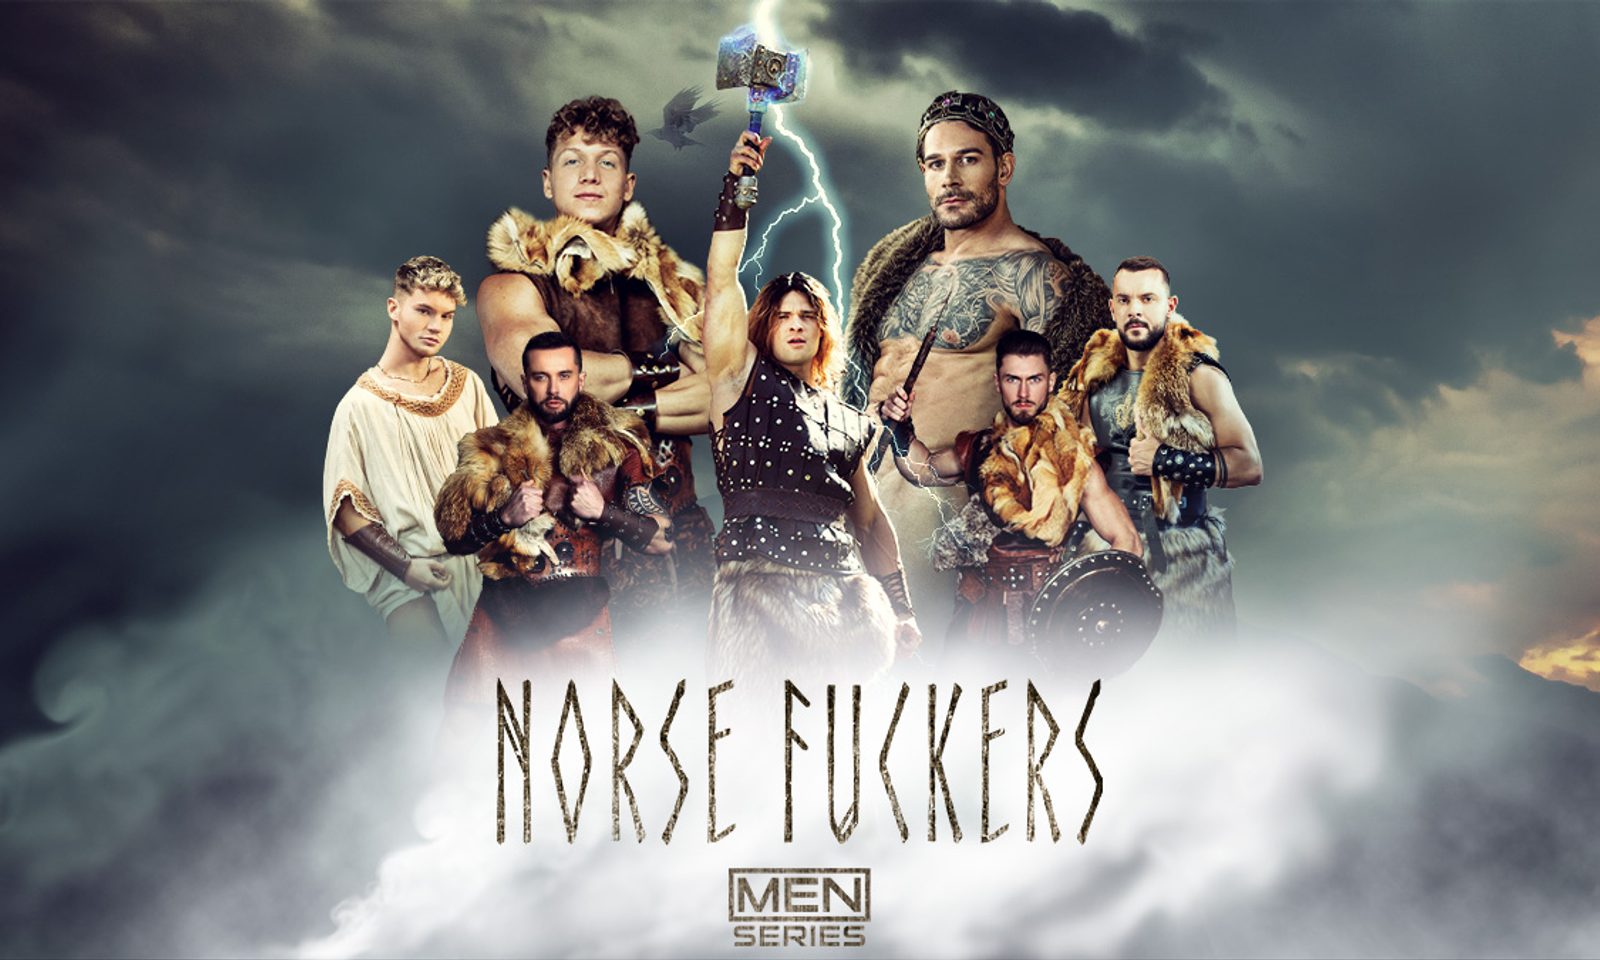 Norse fuckers